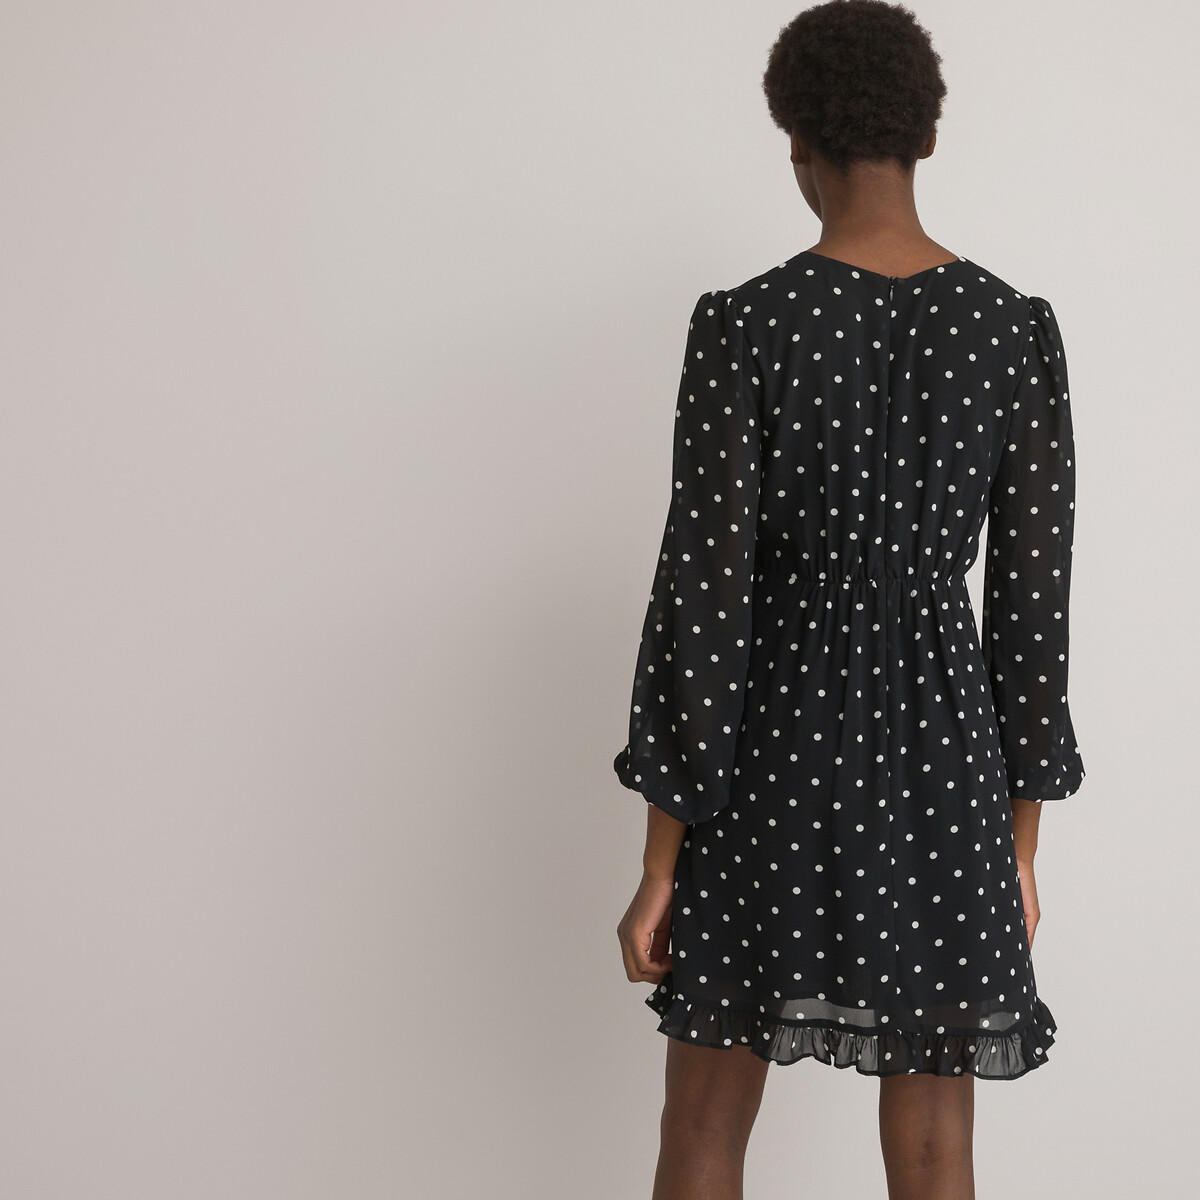 Платье Короткое расклешенное принт в горошек 58 черный LaRedoute, размер 58 - фото 4